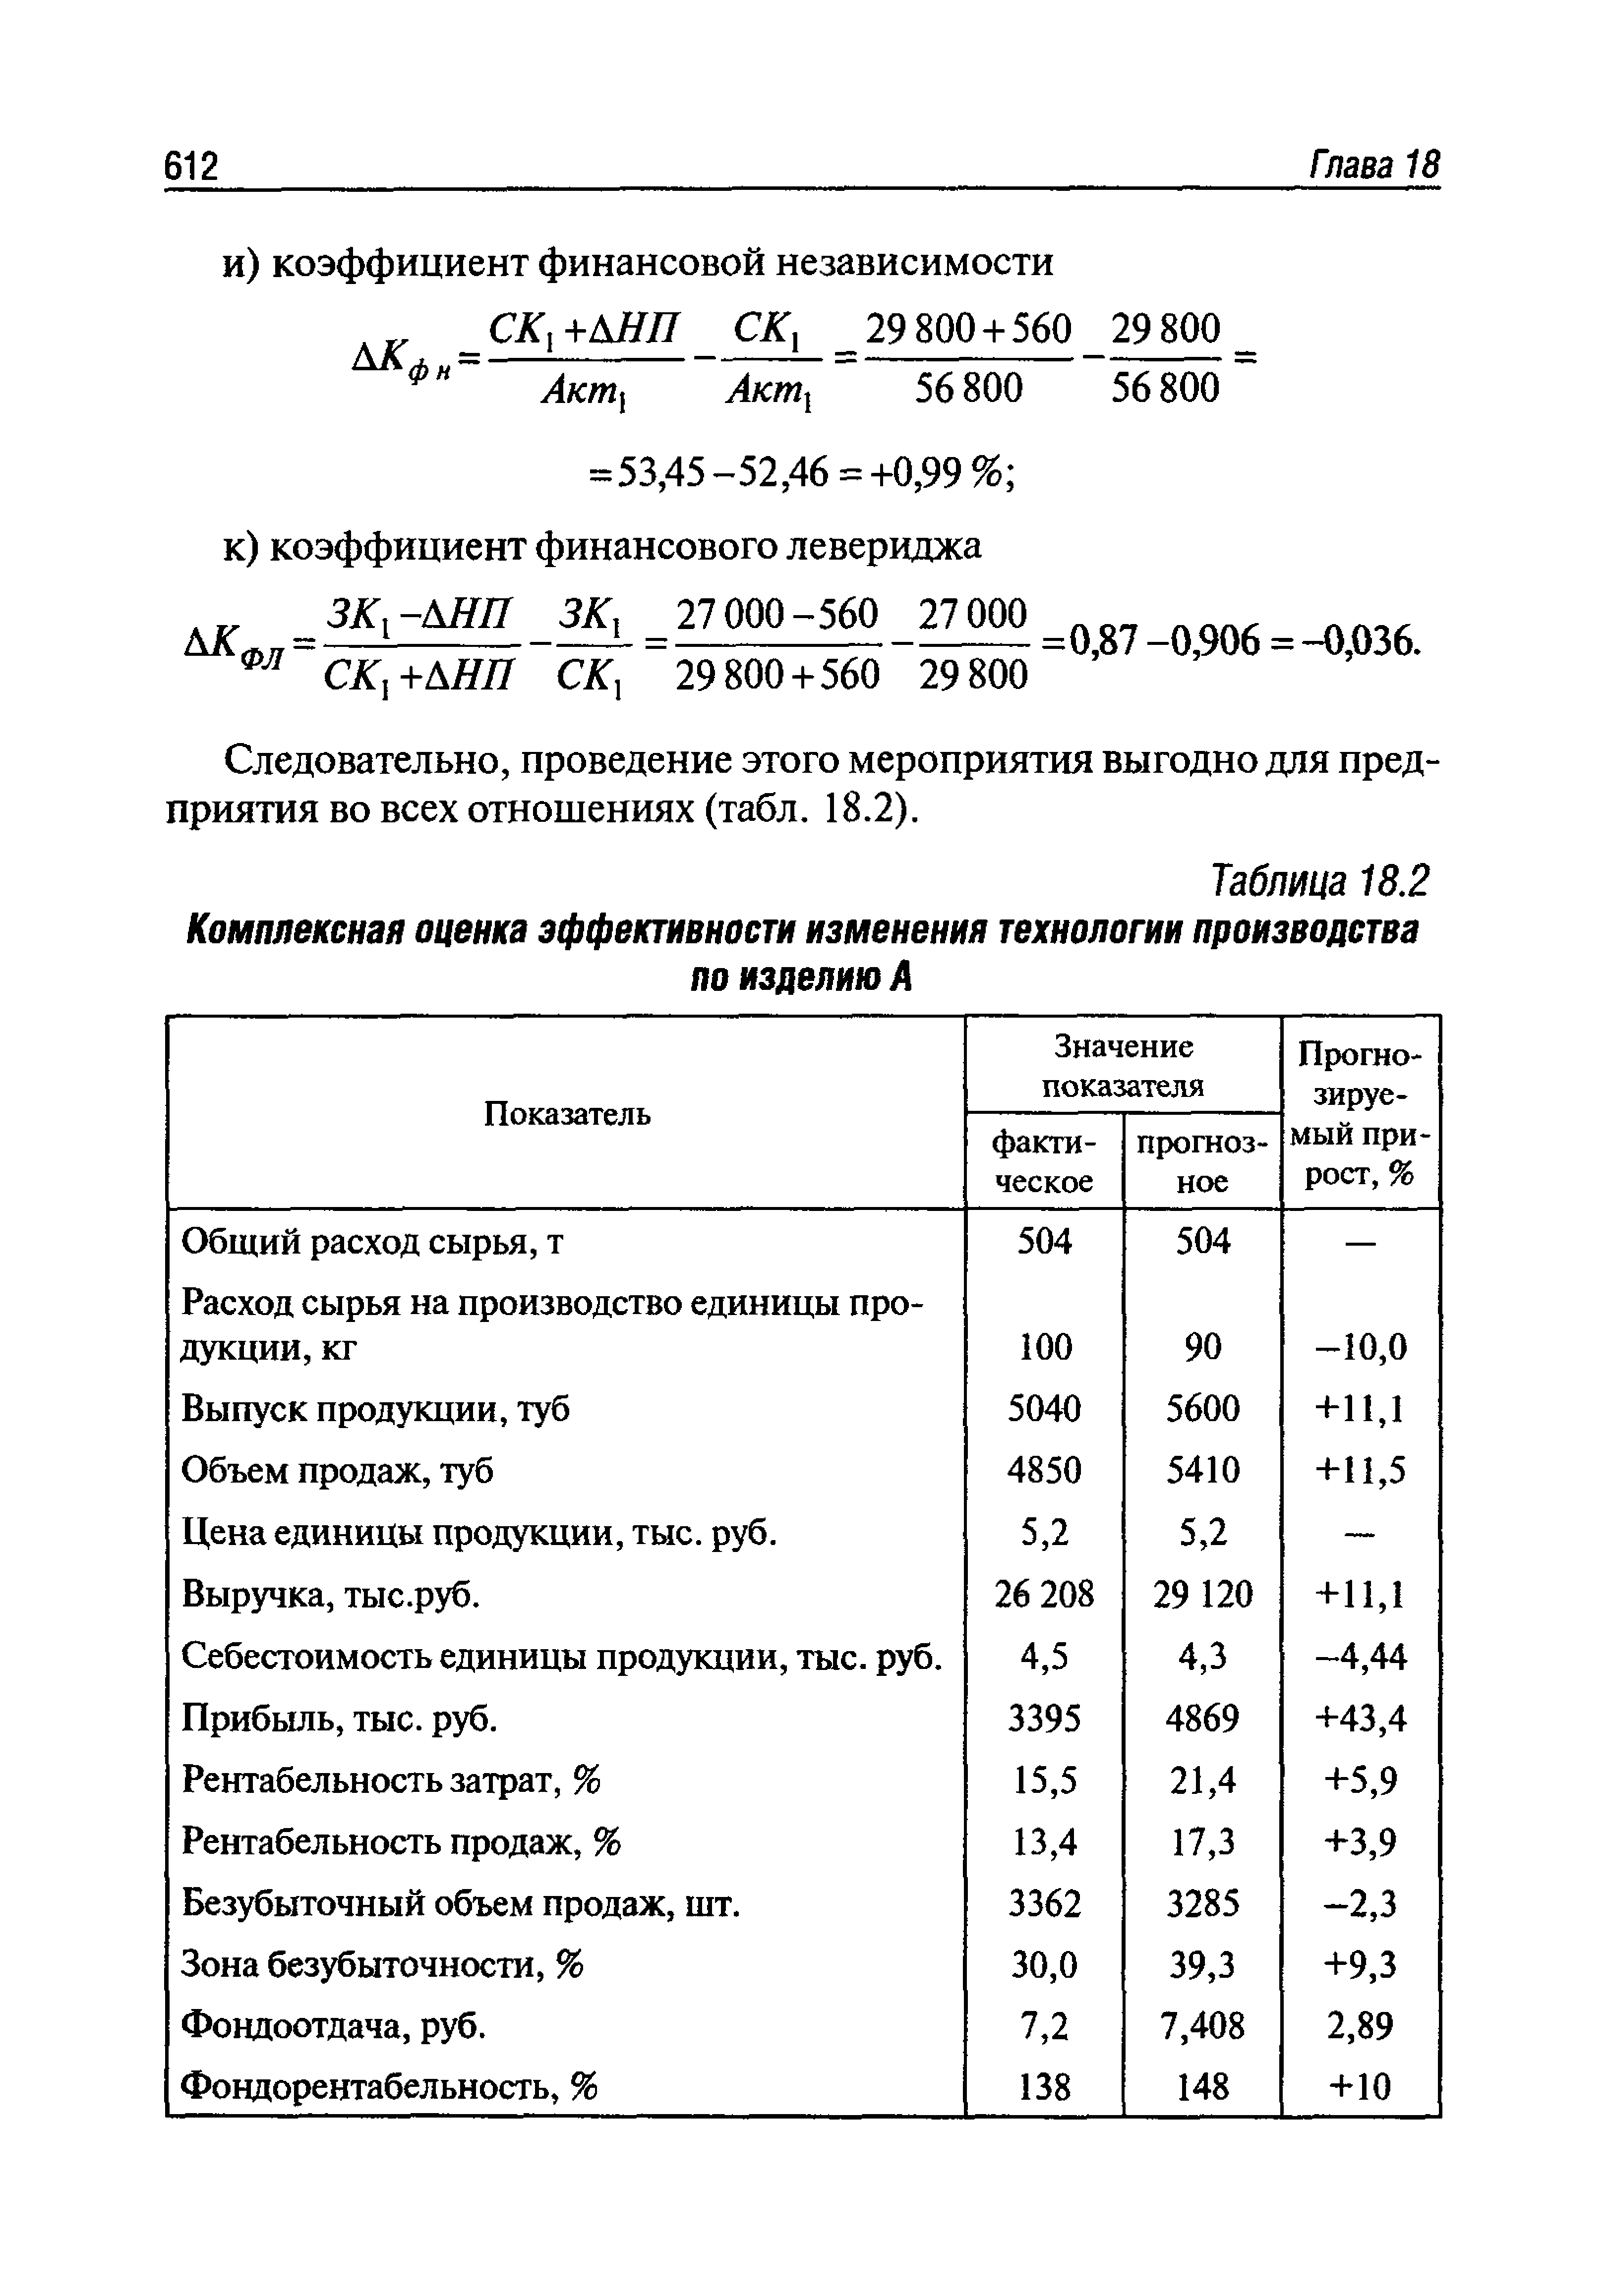 Расчет фактического расхода сырья на 1 т молочного продукта формула